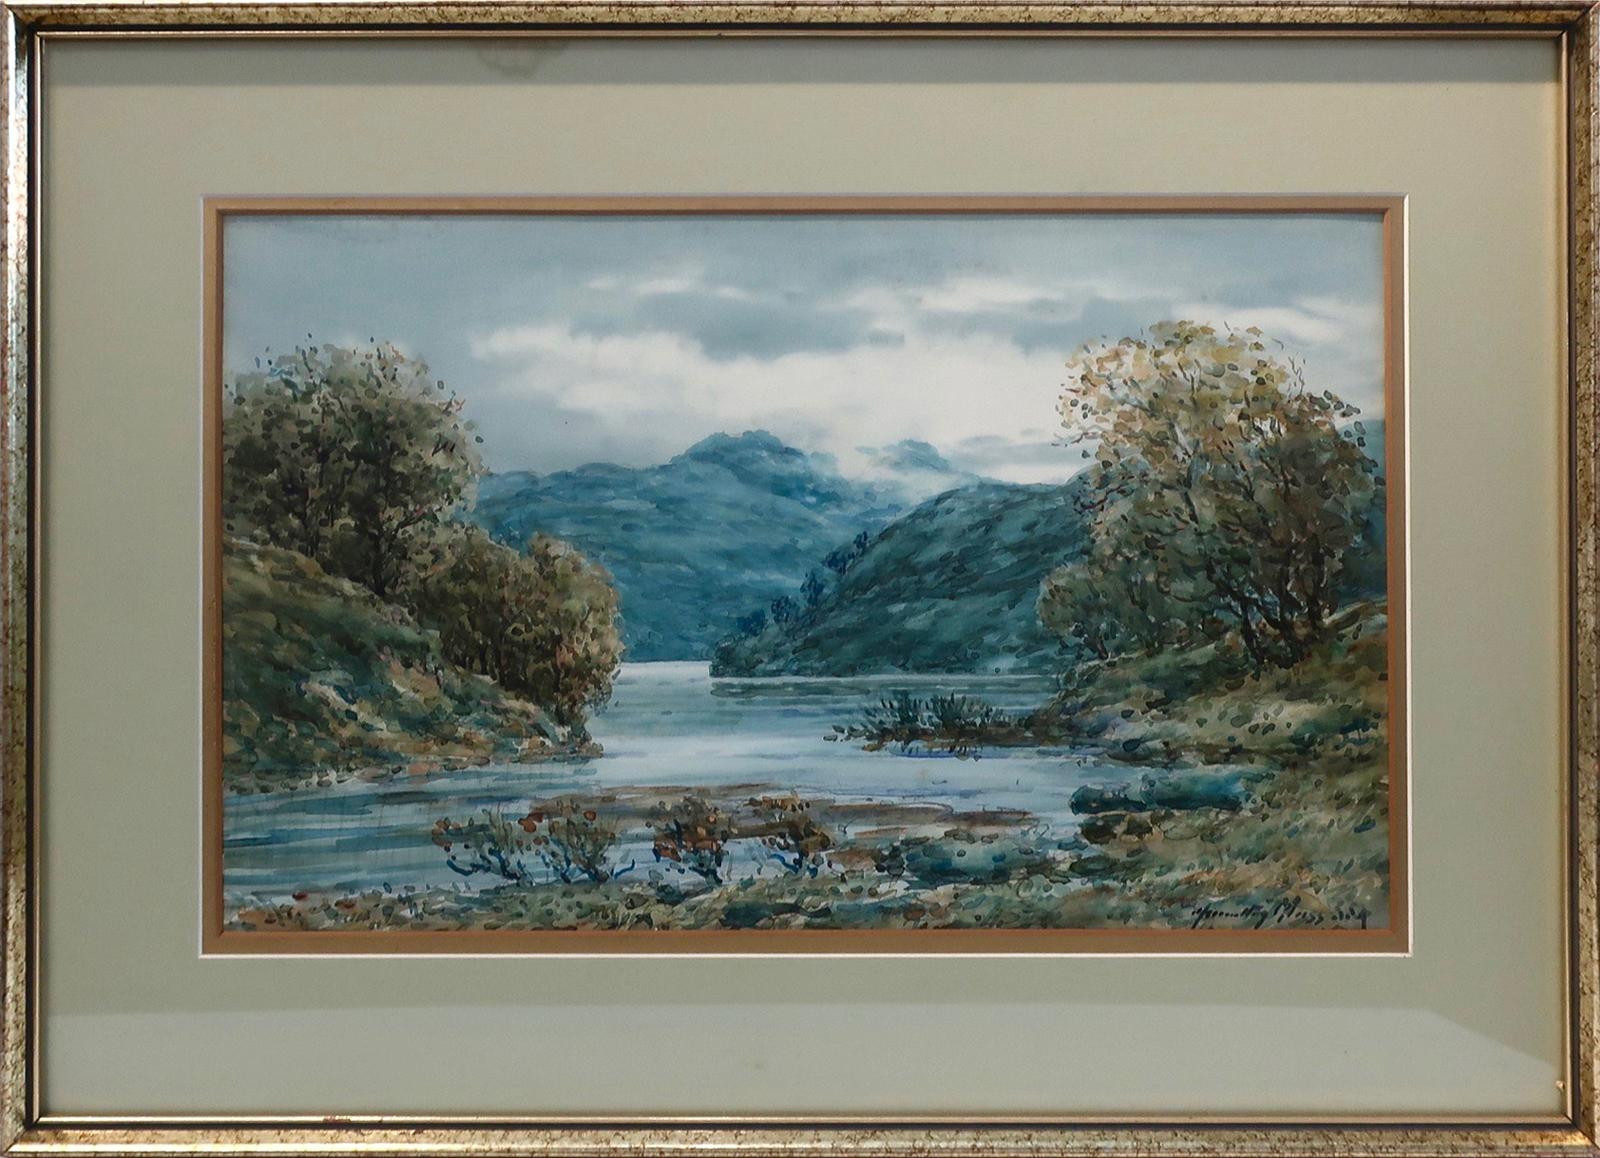 John Hamilton Glass (1890-1925) - Autumn On Lochaline (Scottish Highlands)